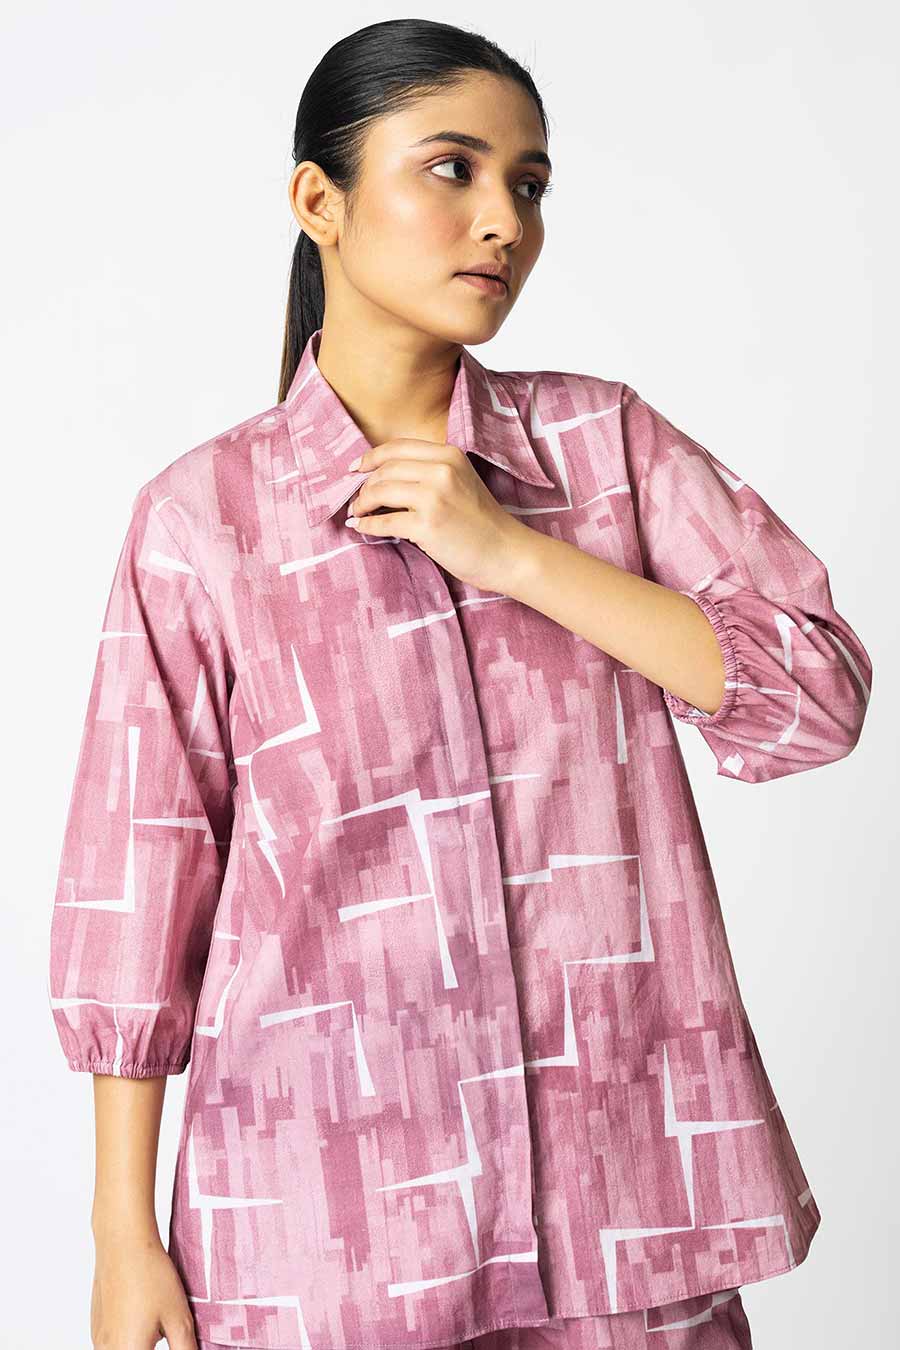 Pink Brick Printed Shirt & Shorts Co-Ord Set